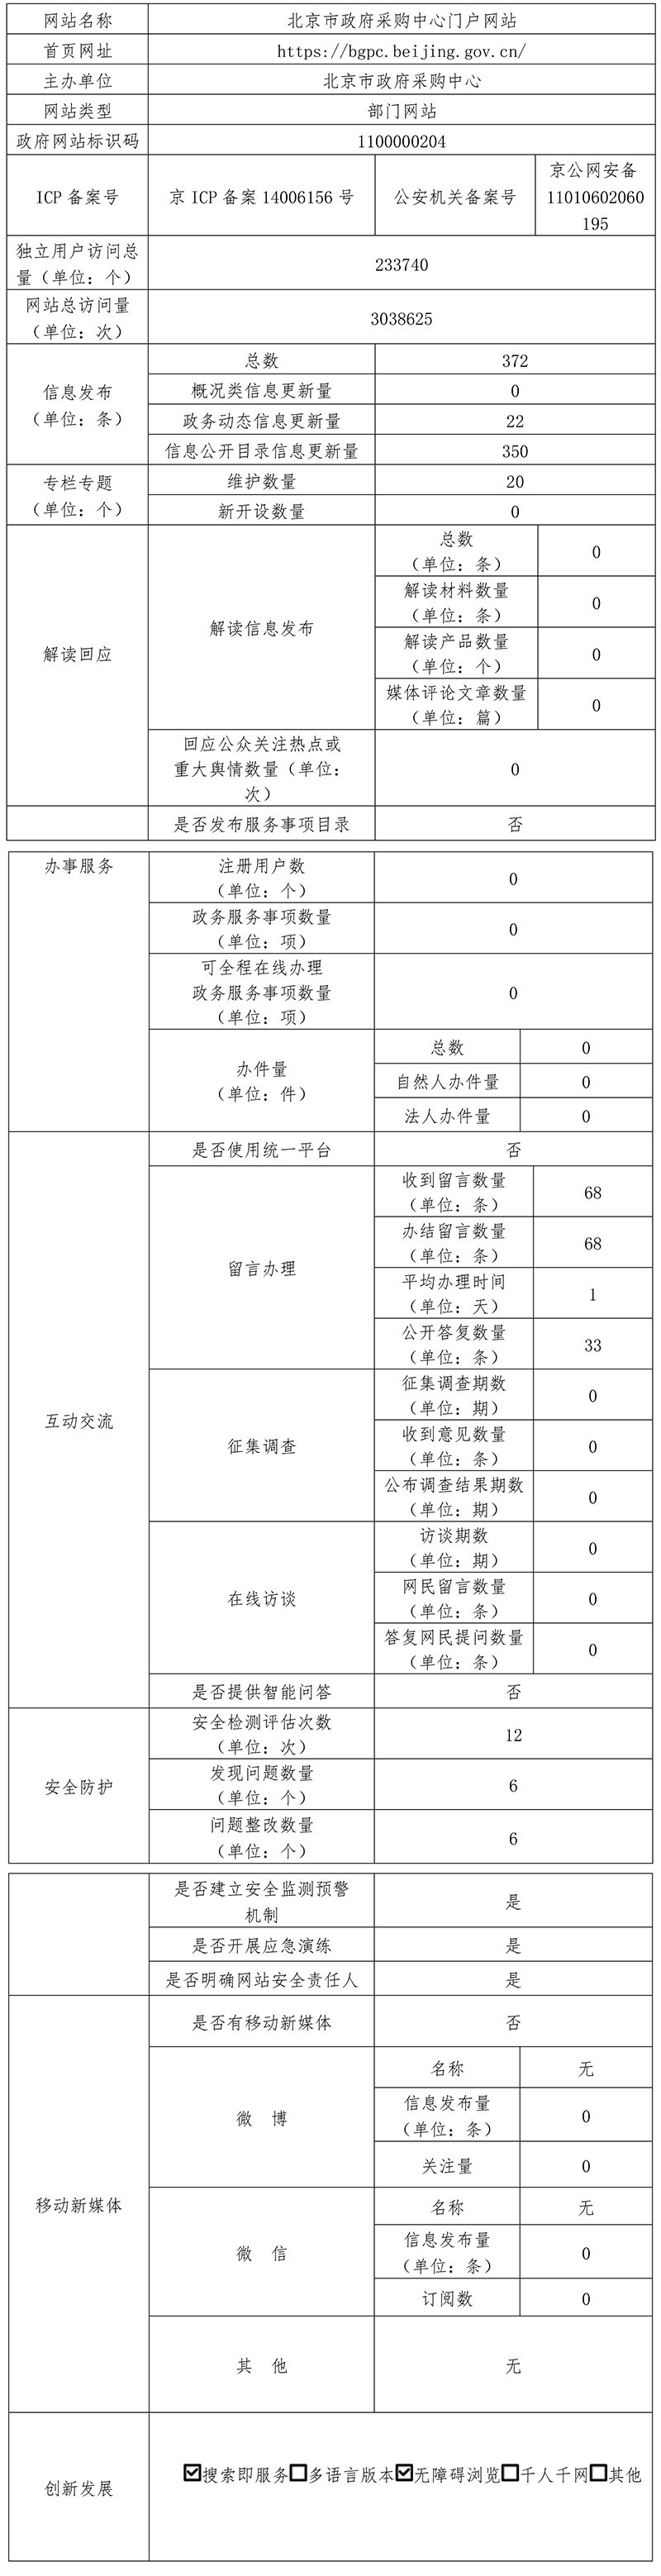 北京市政府採購中心2021年政府網站年度工作報表